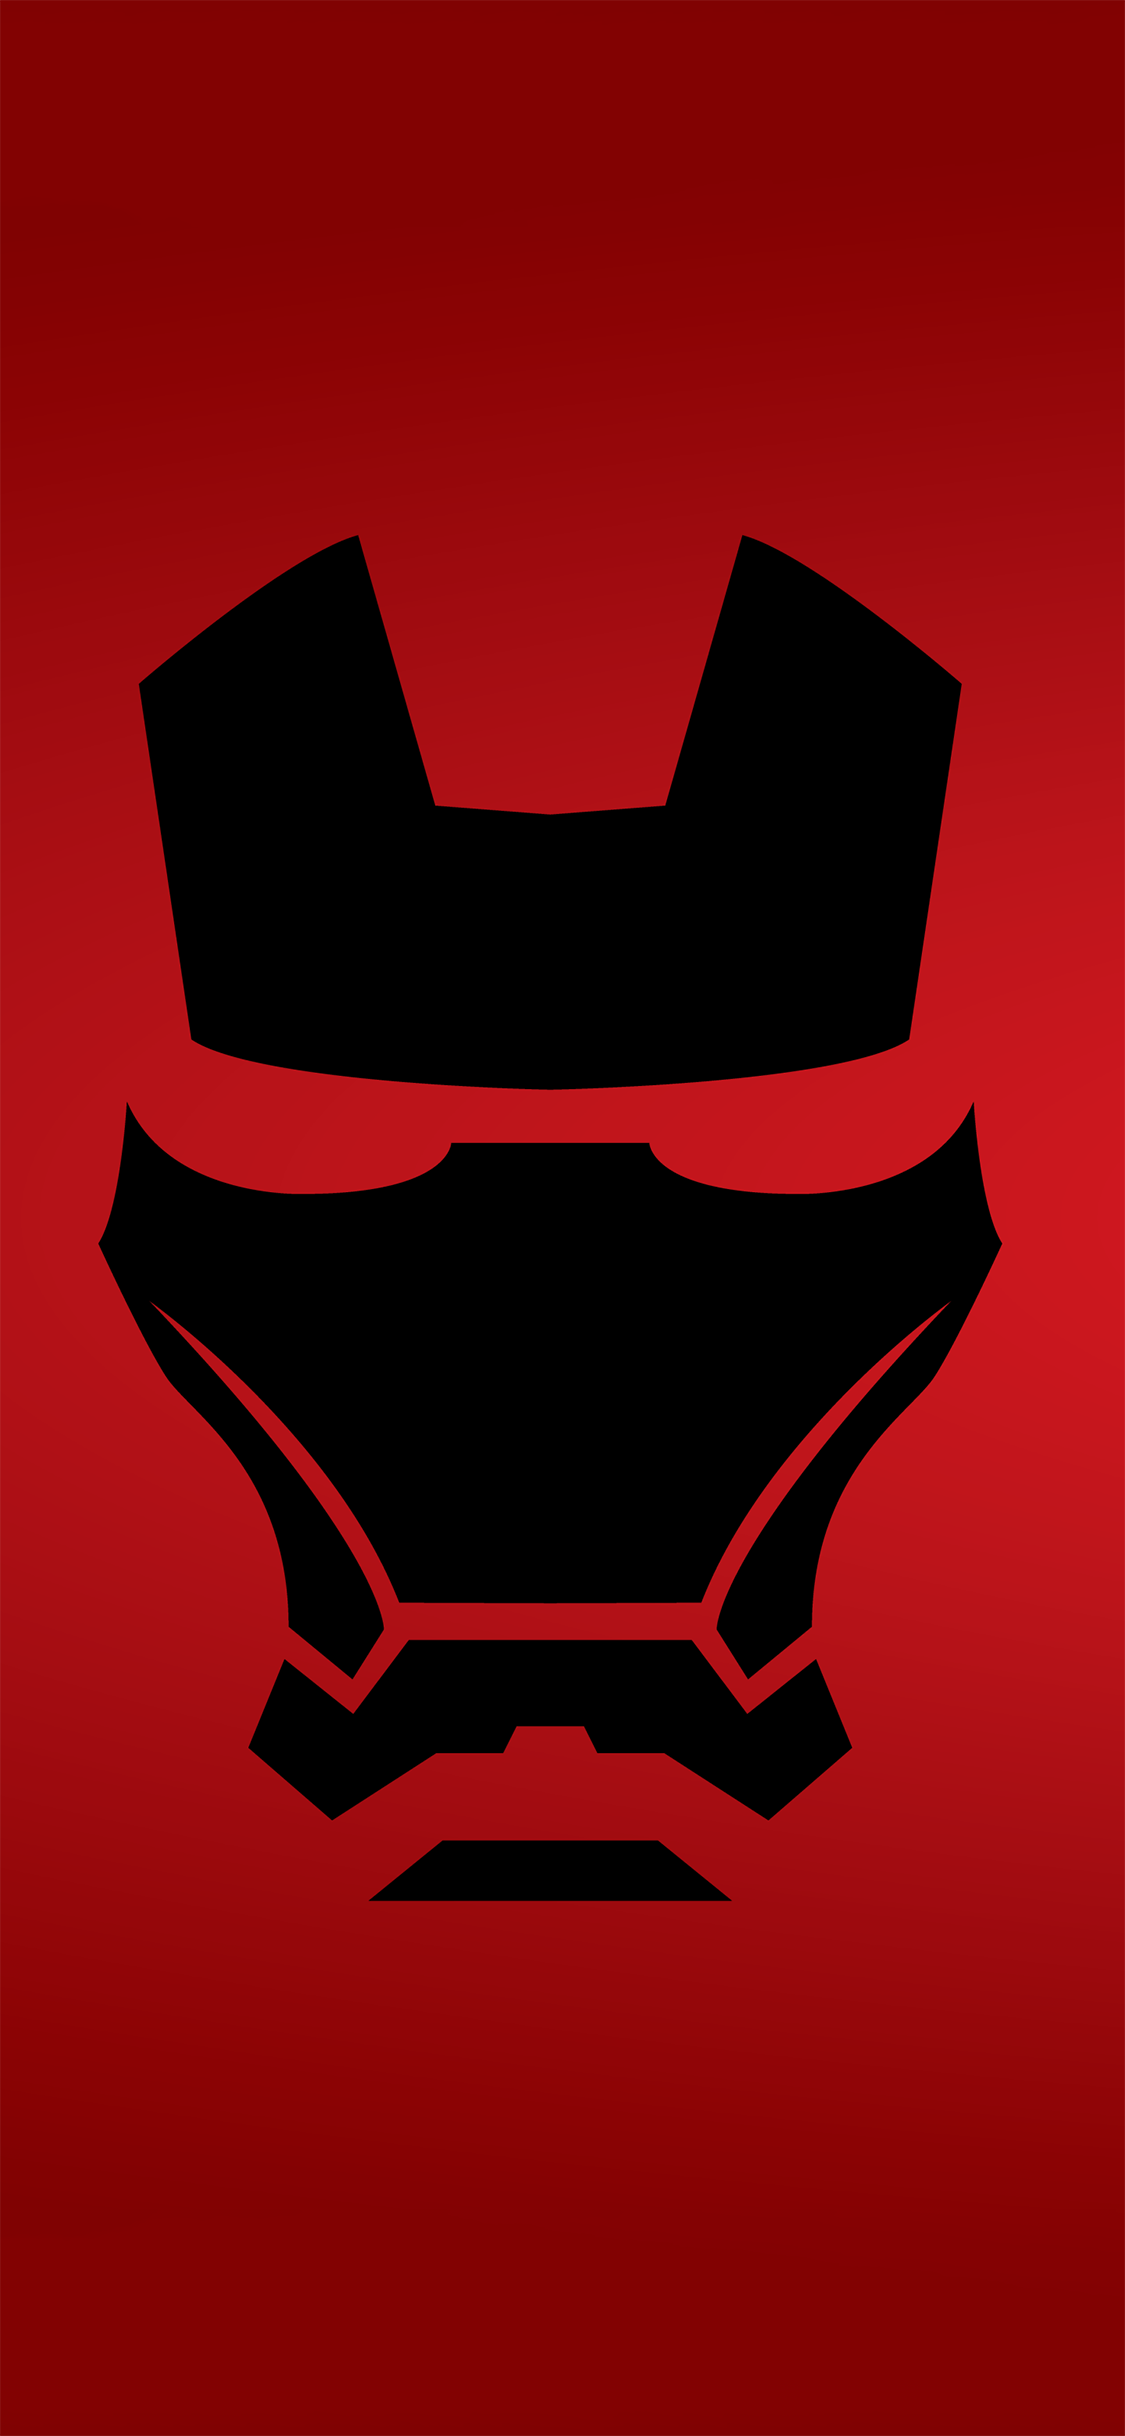 钢铁侠logo壁纸图片